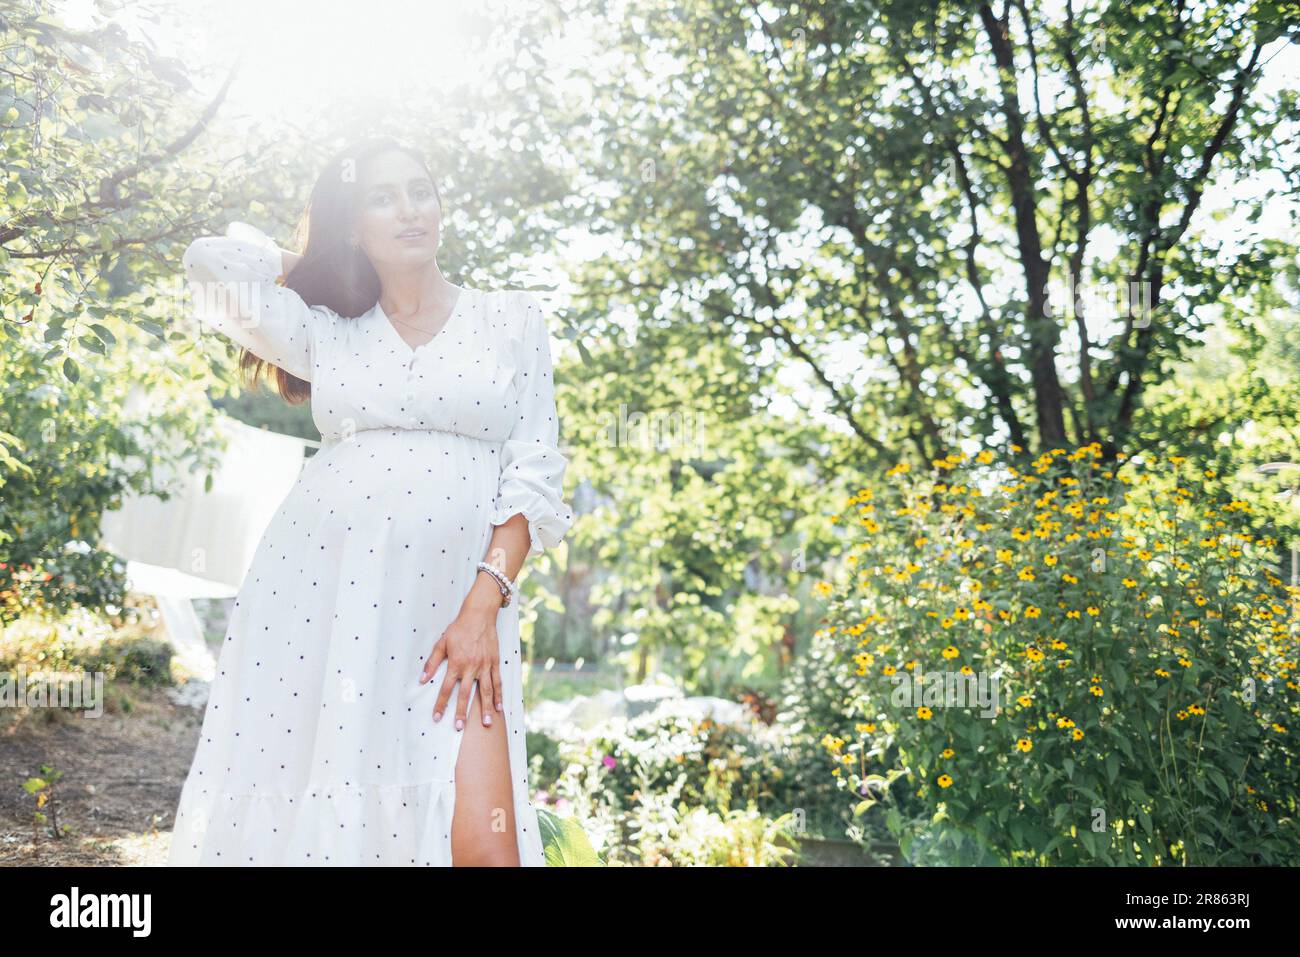 Charmante brunette enceinte en élégante robe blanche est debout à l'extérieur dans le jardin parmi les arbres et les fleurs. Mettez en évidence les rayons ensoleillés. Une jeune femme s'attend à Banque D'Images